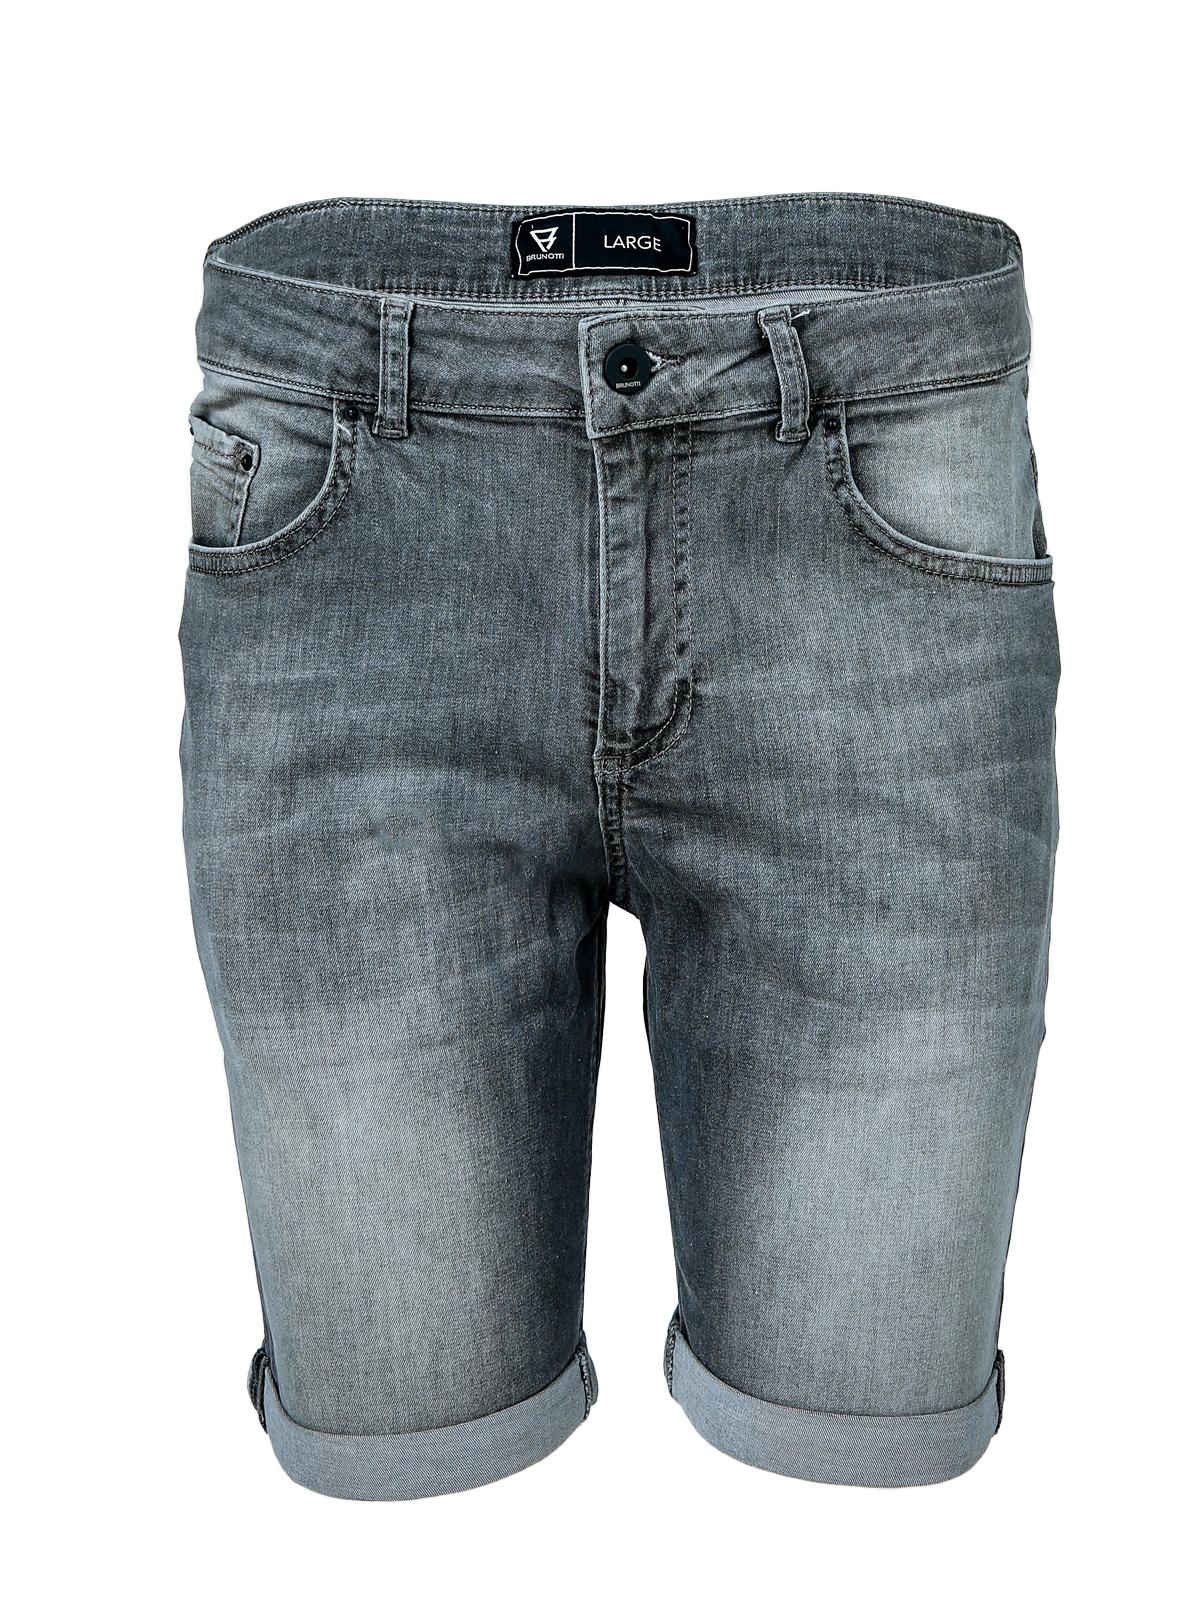 Hangtime Herren Jogg Jeans | Grau